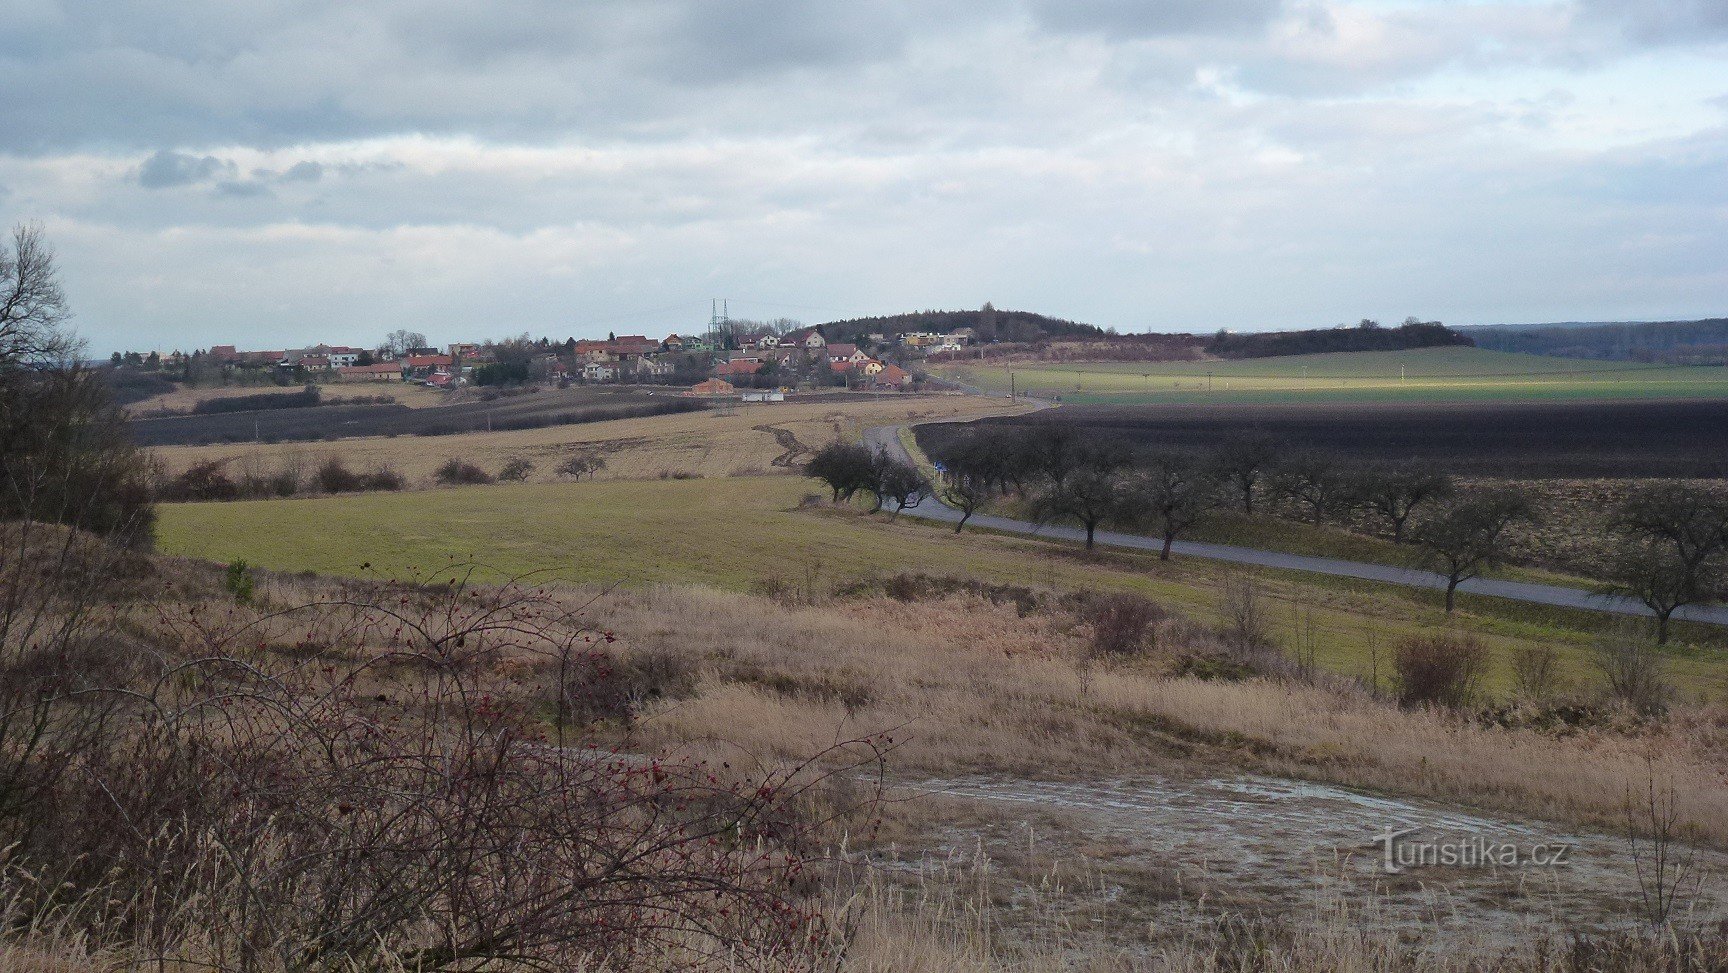 Mokošín - utsikt över kullen och byn Mokošín från den närliggande jilník i Tupesy